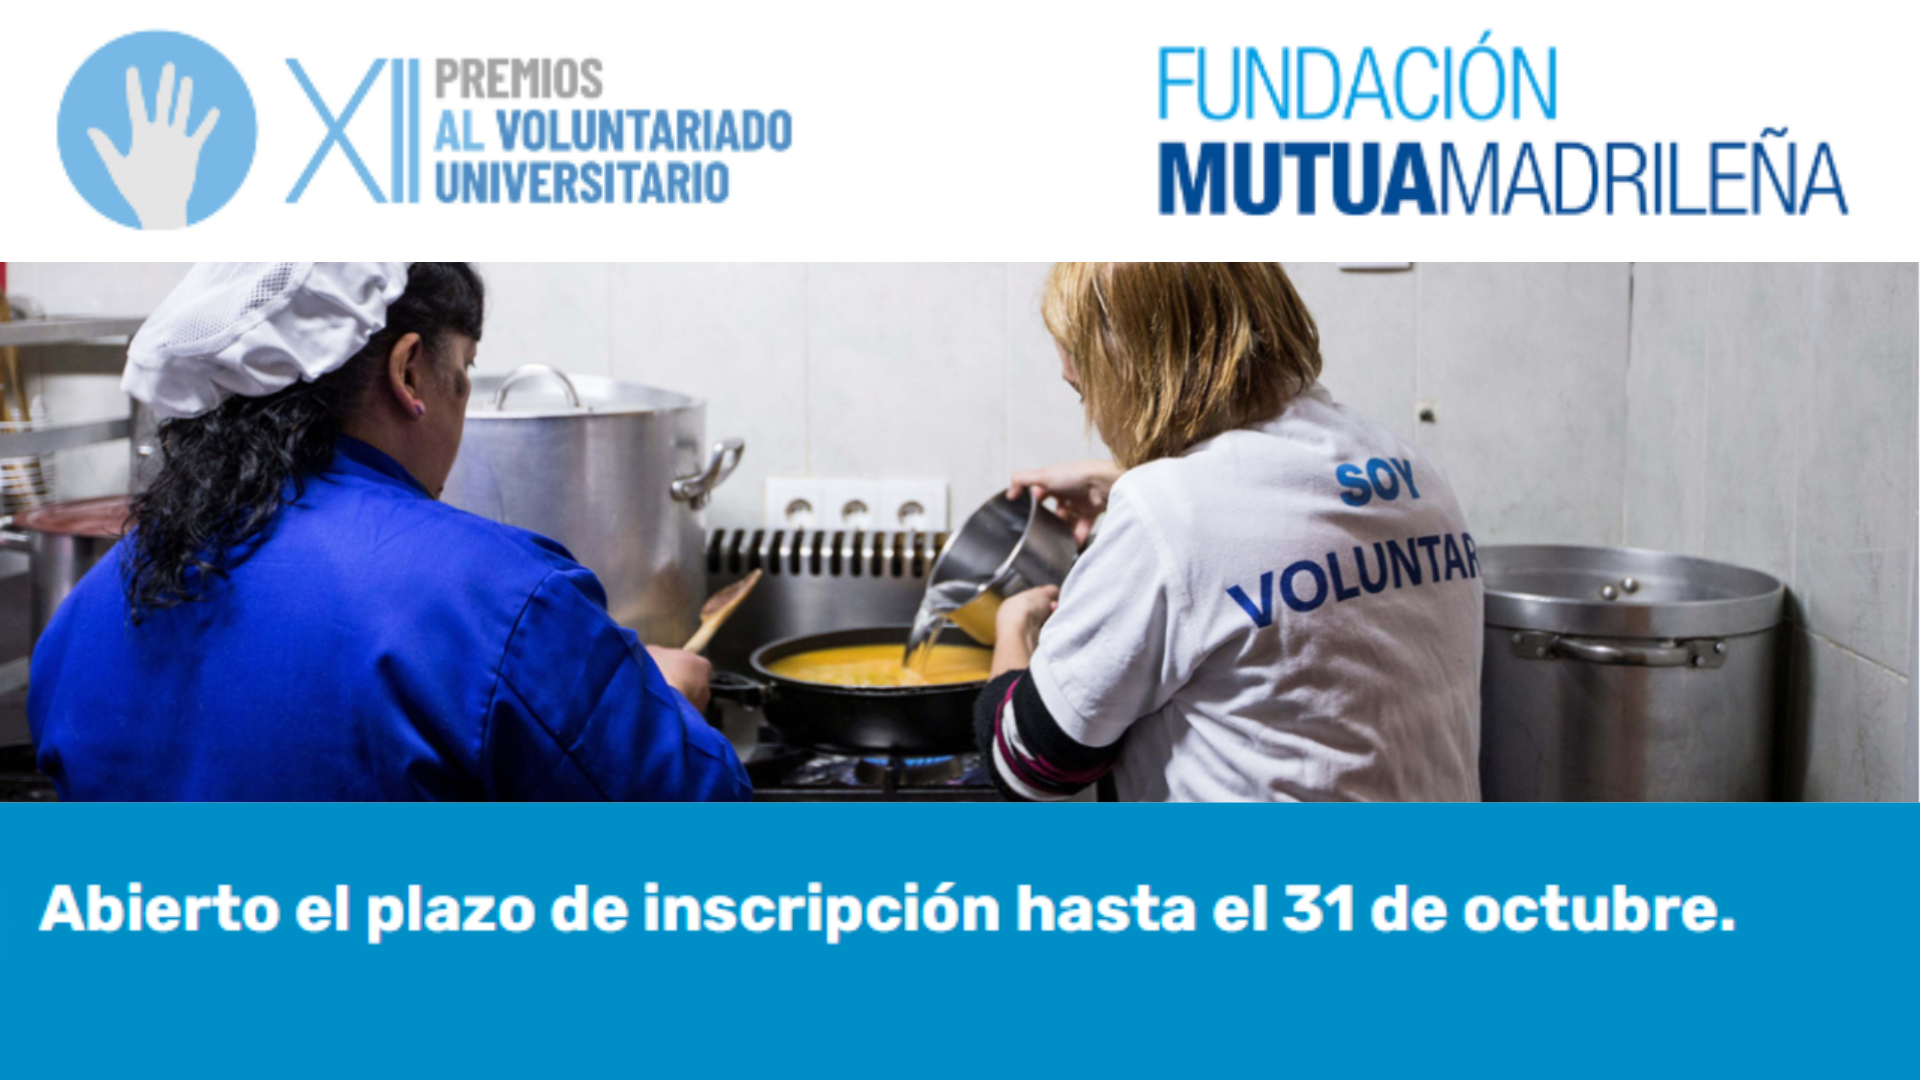 La Fundación Mutua Madrileña convoca los Premios al Voluntariado Universitario para reconocer y promover el voluntariado social entre los jóvenes españoles.